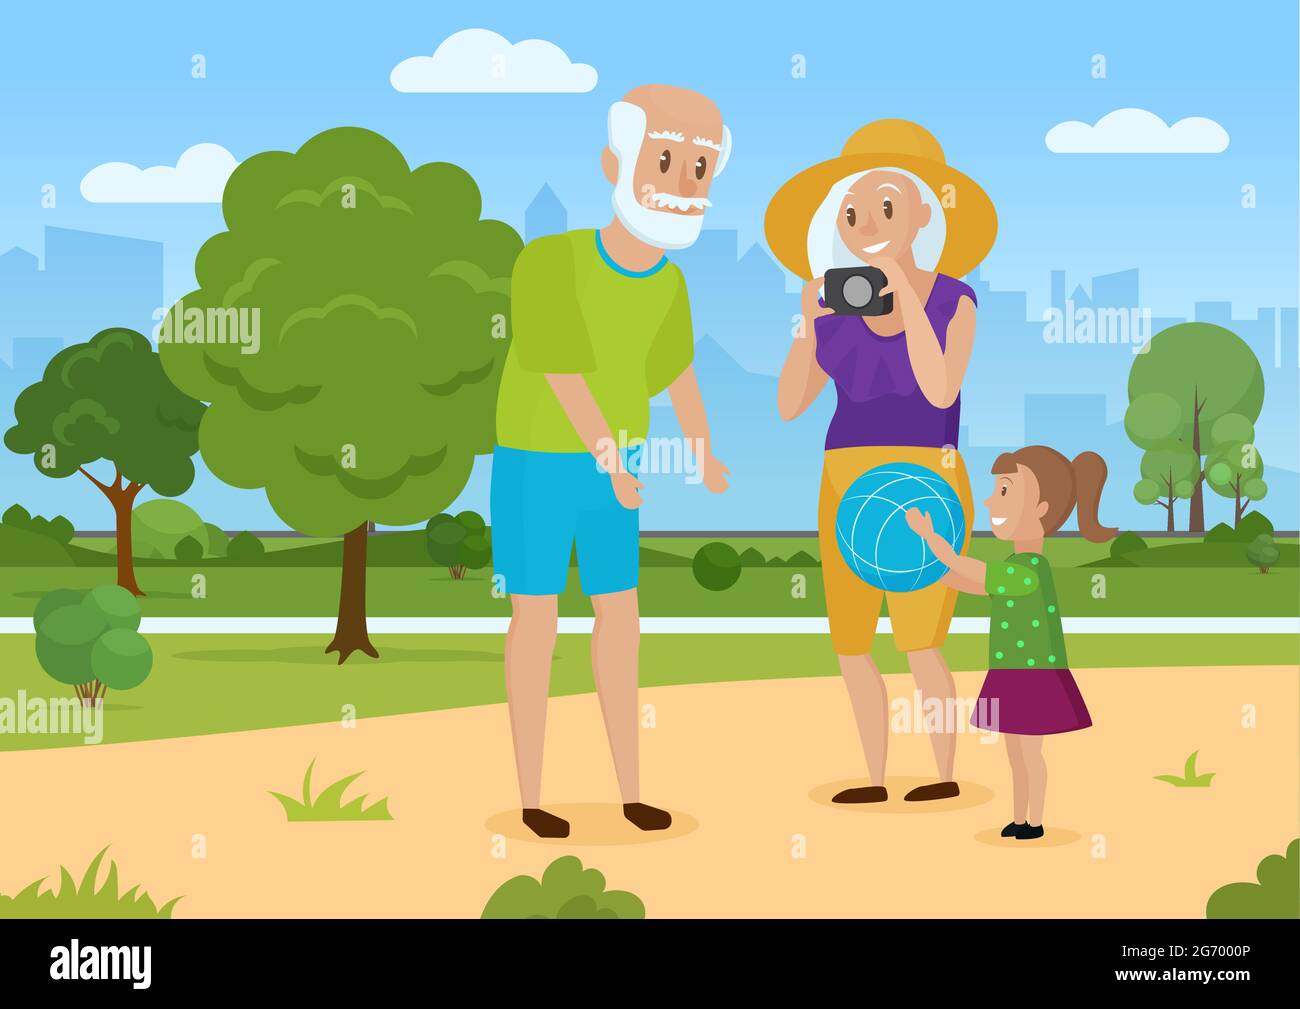 Famille heureuse sur la promenade estivale, grands-parents et enfants illustration vectorielle. Caricature grand-mère grand-père et fille enfant jouer ensemble, passer du temps amusant dans le terrain de jeu de la ville verte arrière-plan du parc Illustration de Vecteur